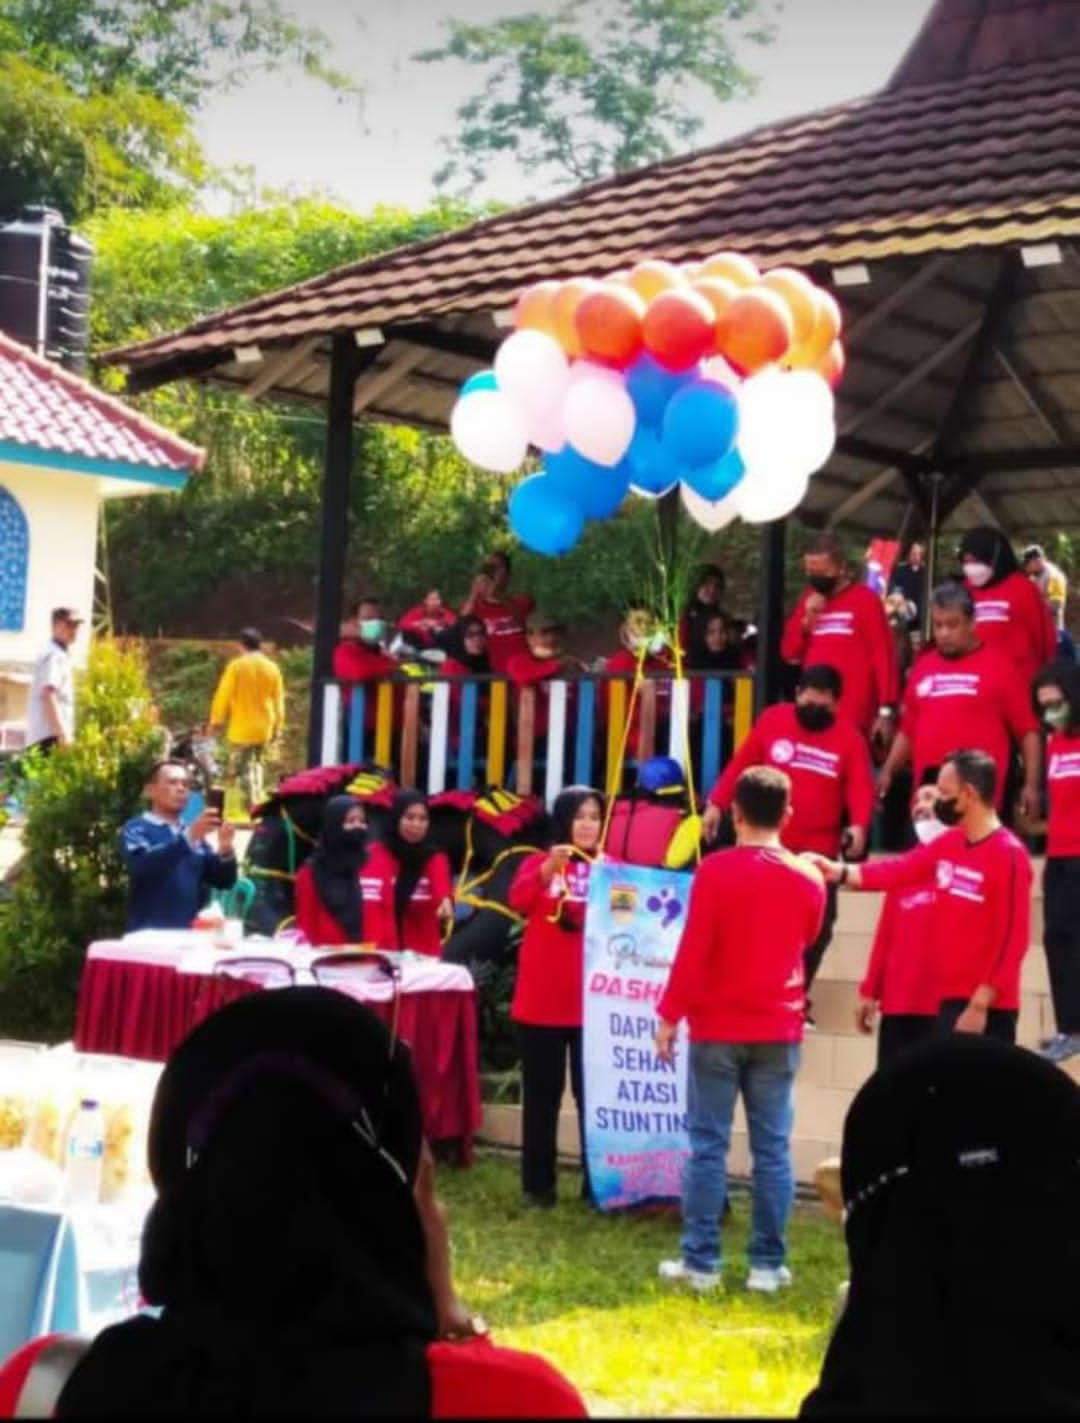 Ibu Ir. Proboningsih Dwi Danarti dan Bapak Hery Mulyadi, SE meresmikan Launching DASHAT di Kampung KB Suruhan